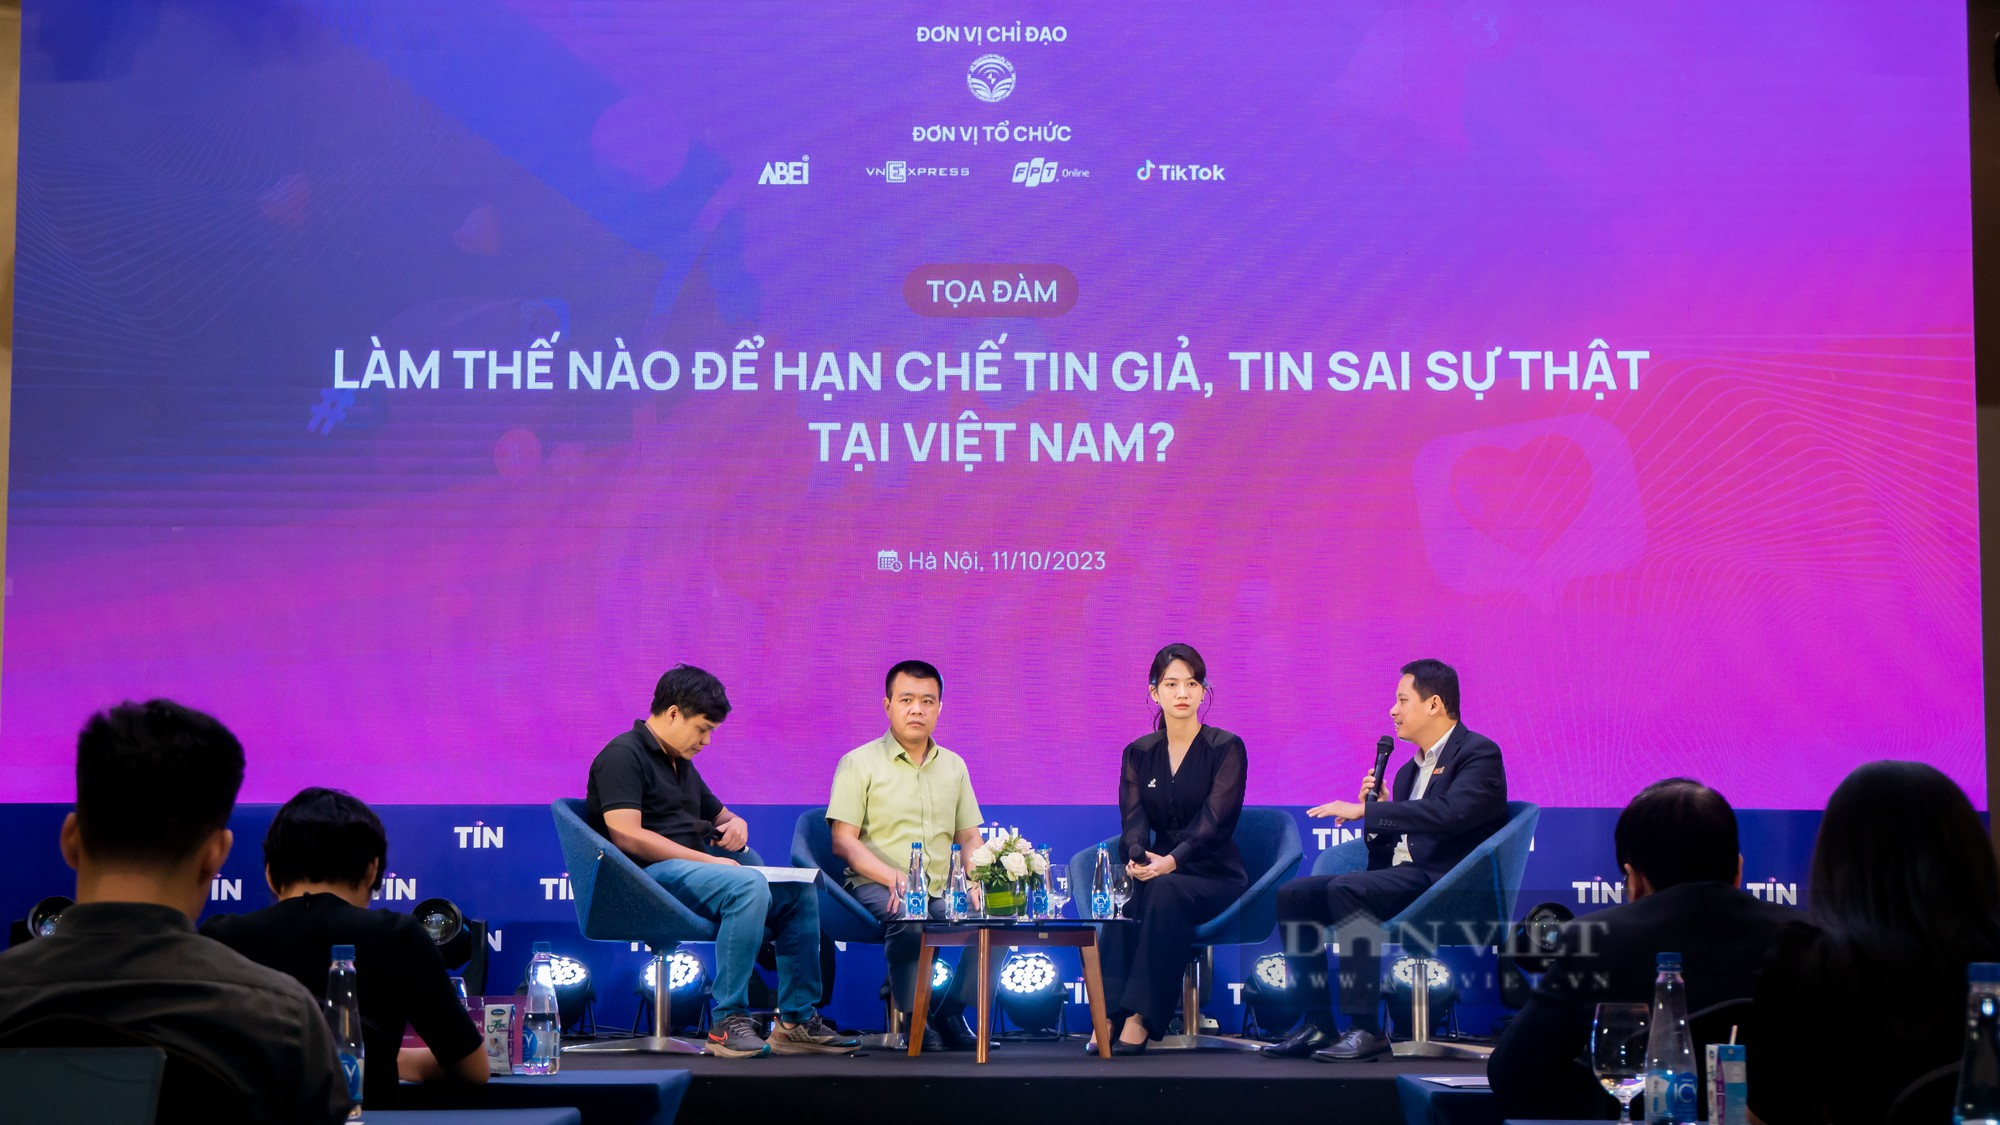 Thứ trưởng Nguyễn Thanh Lâm: TikTok, Youtube, Facebook đang chuyển mình - Ảnh 1.